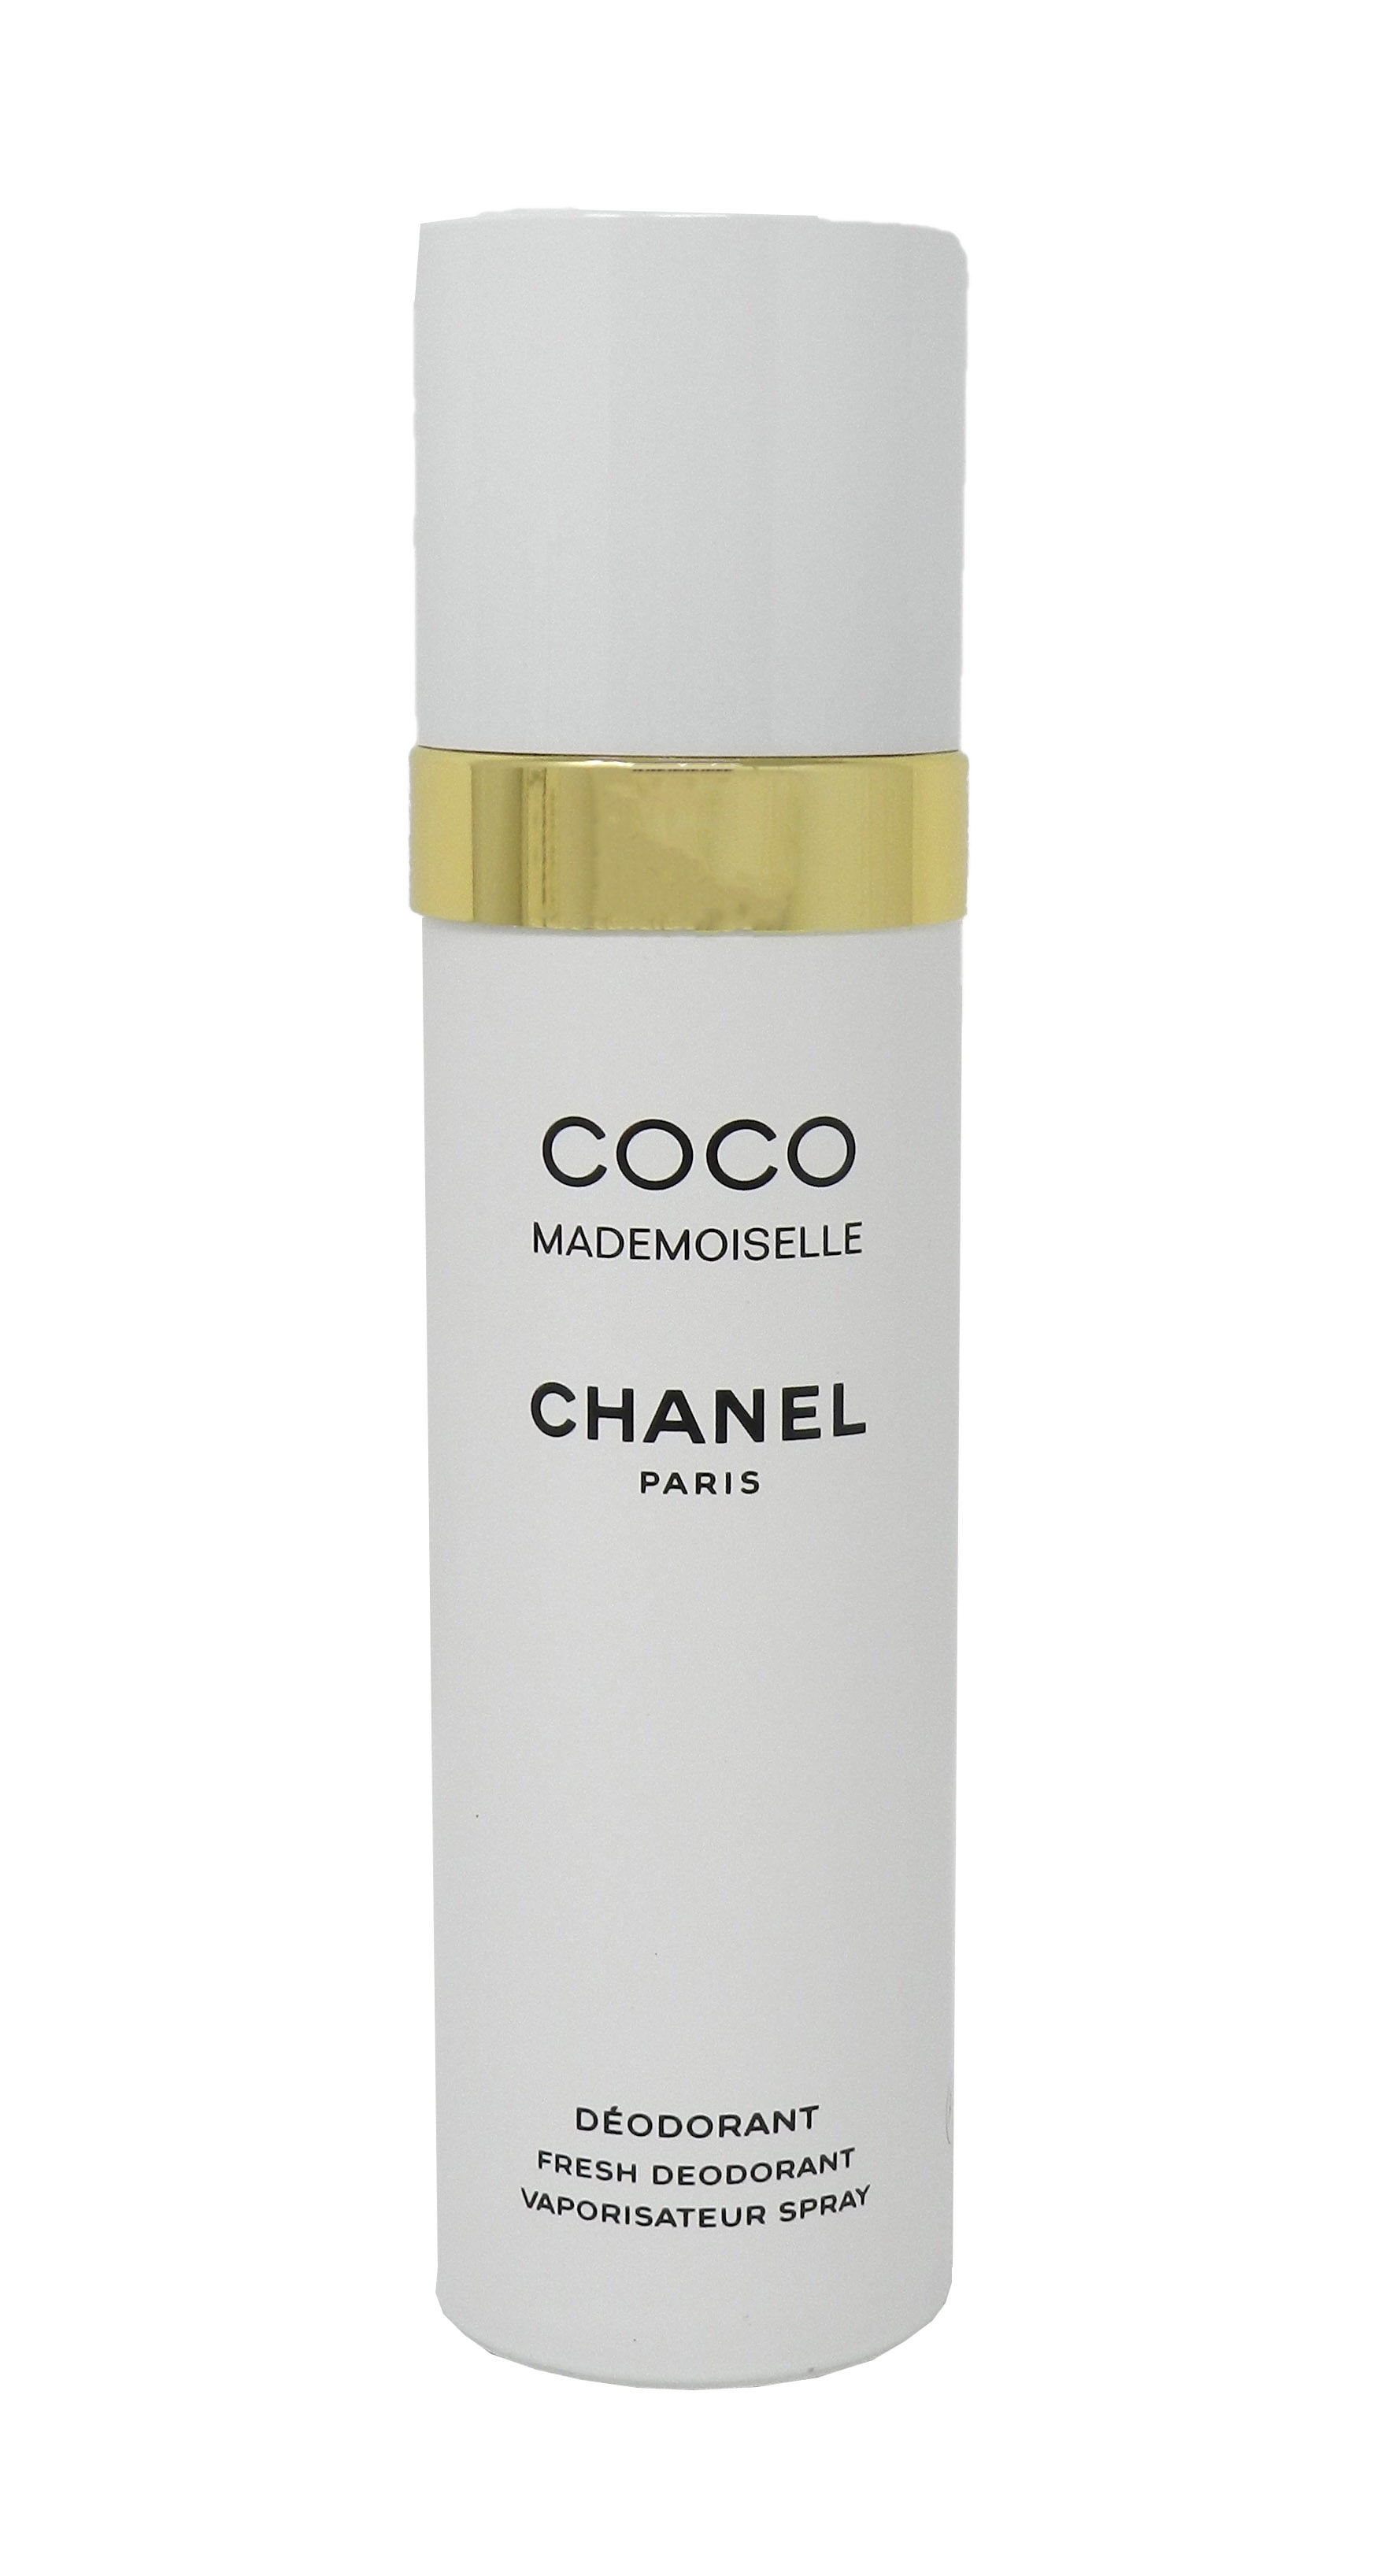 Mua Xịt Khử Mùi Hương Nước Hoa Chanel Coco Mademoiselle Deodorant  Vaporisateur Spray 100ml  Chanel  Mua tại Vua Hàng Hiệu h030060